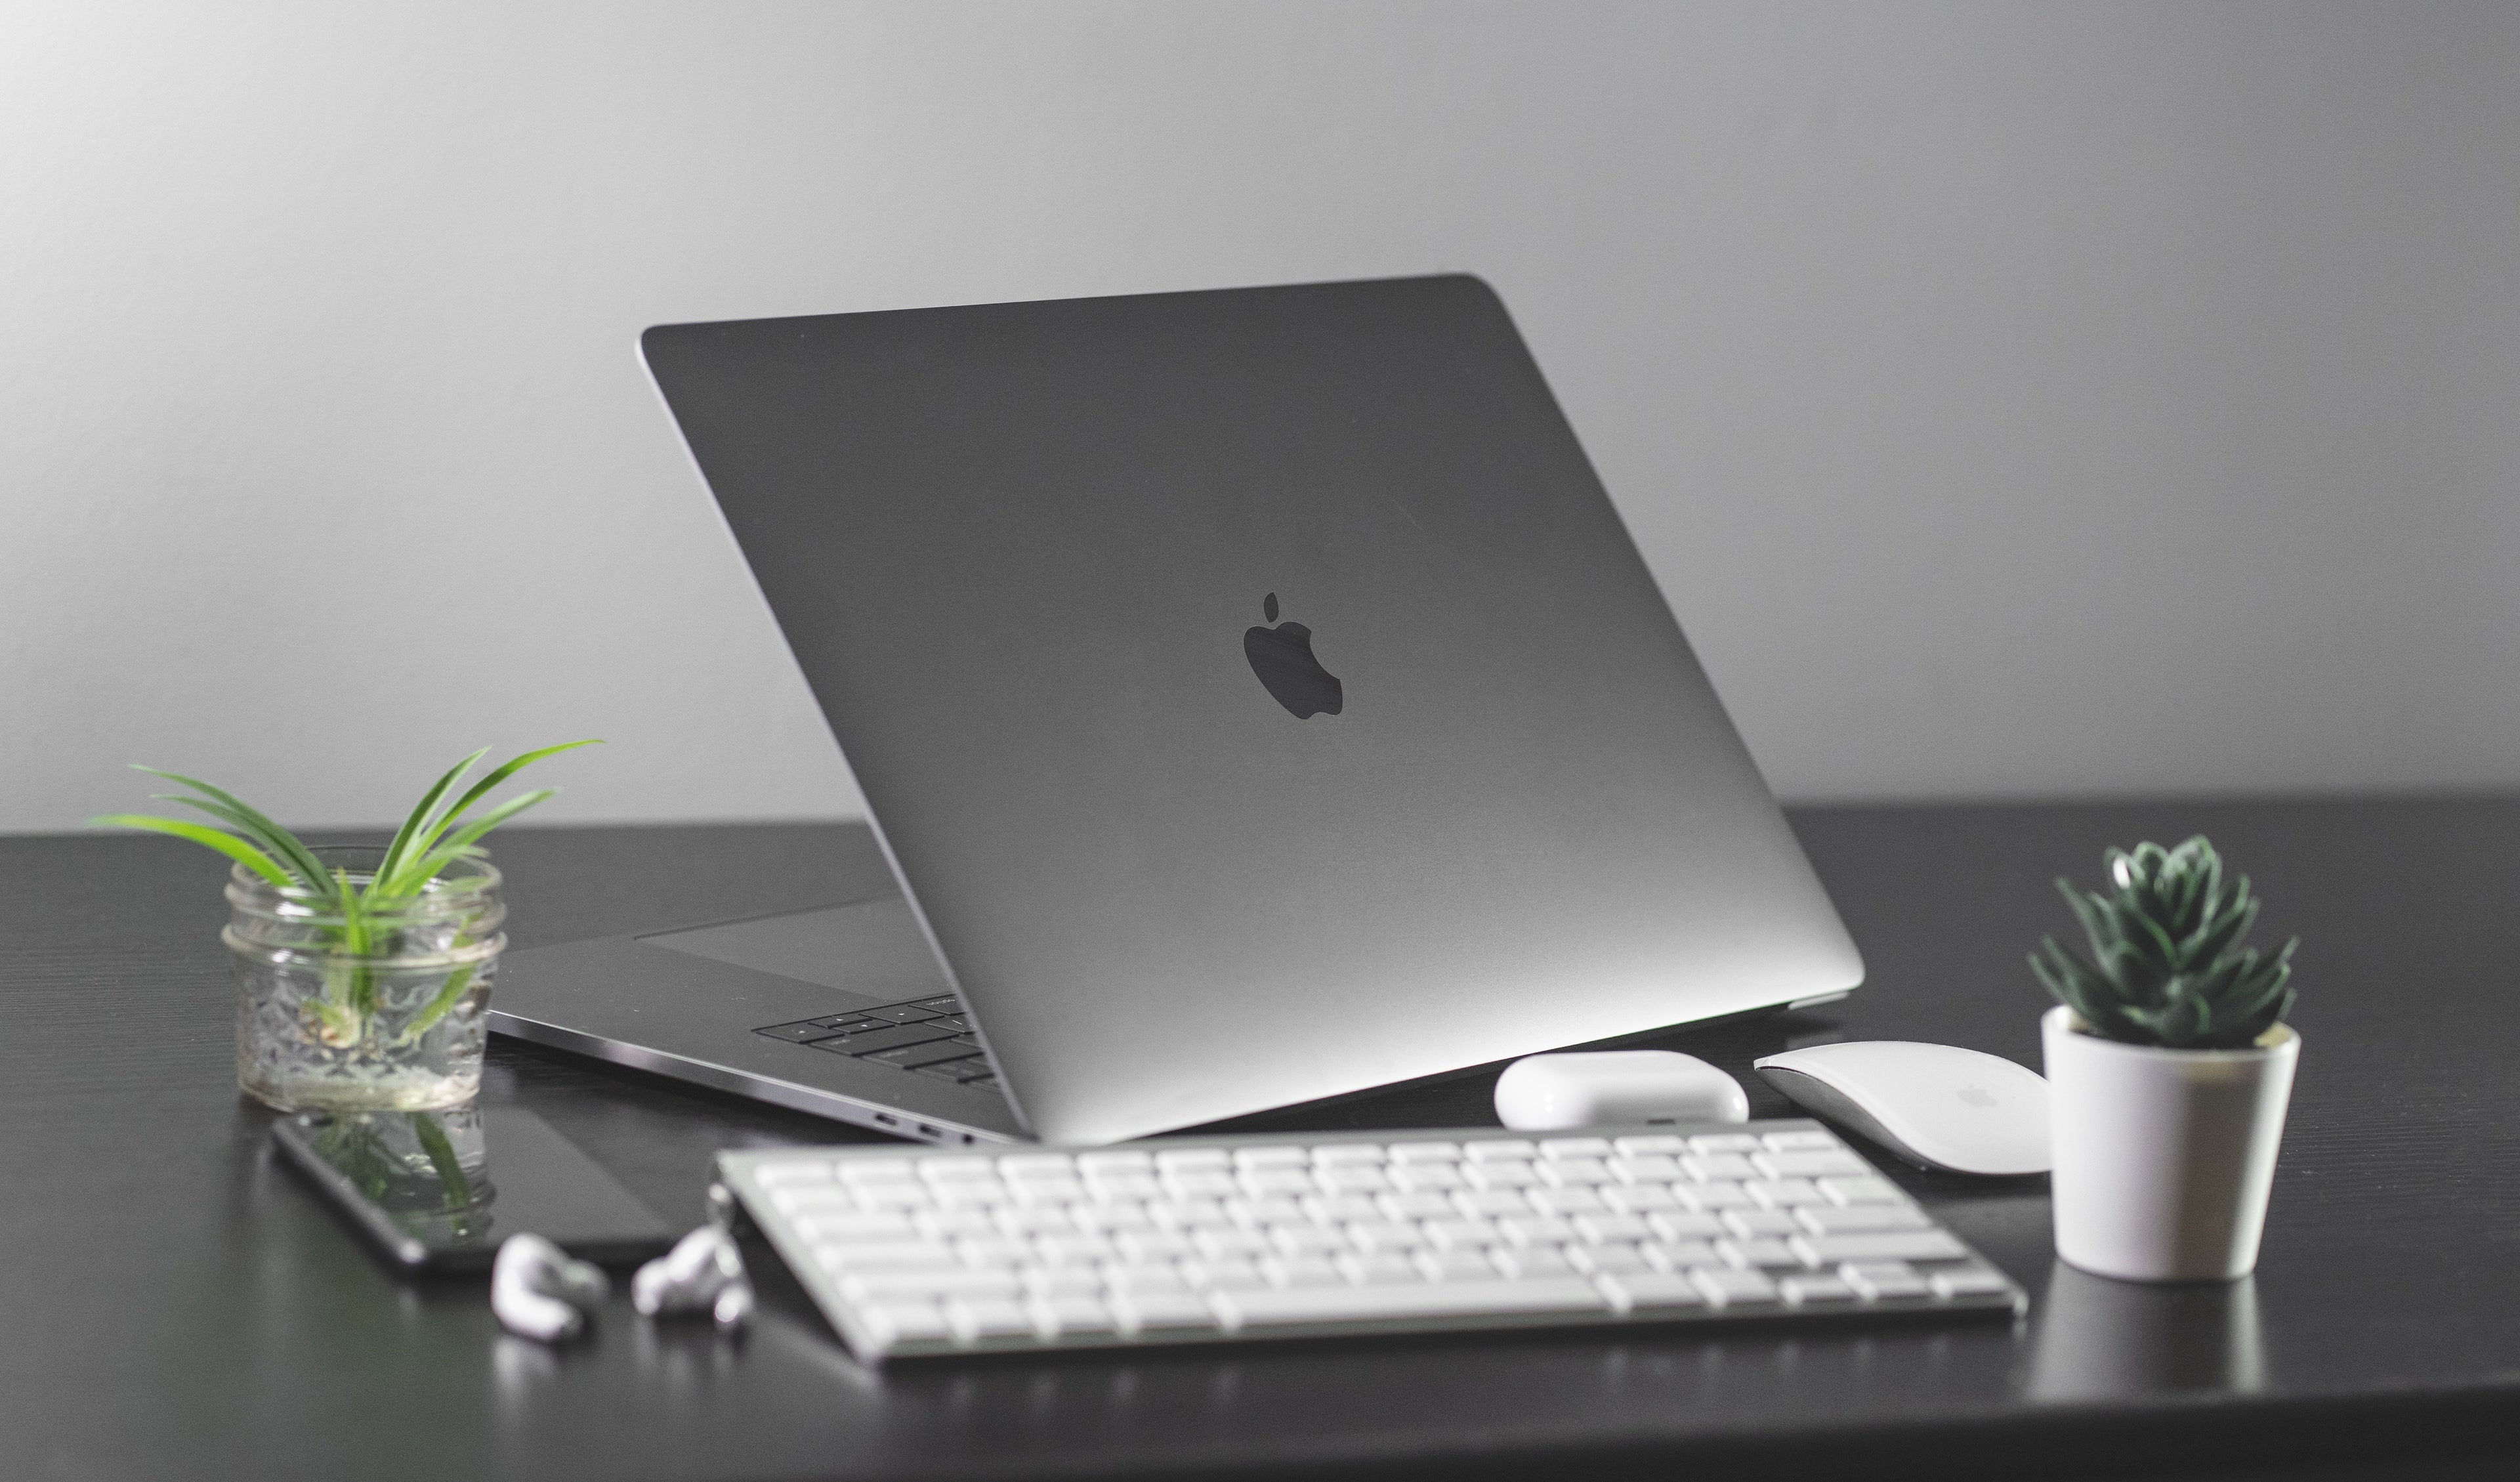 silver macbook pro laptop with wireless keyboard